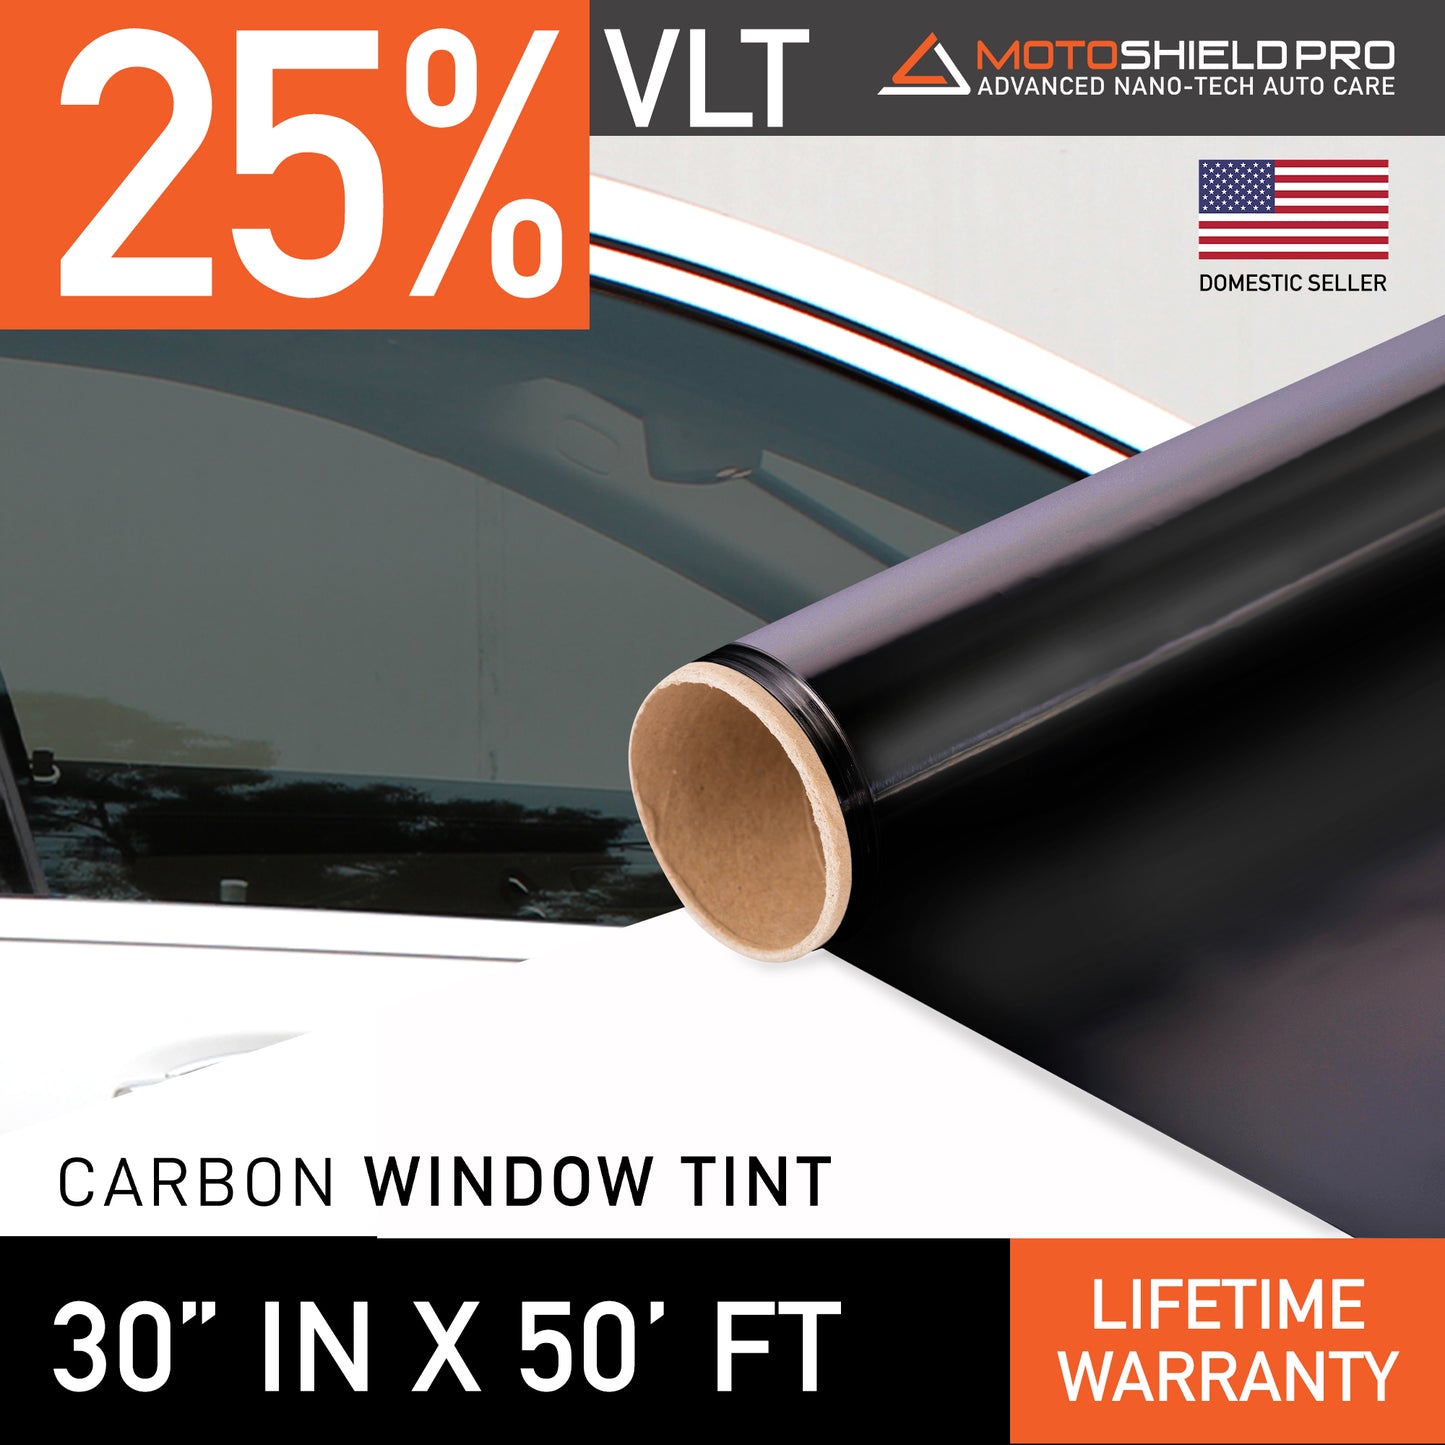 MotoShield Pro Carbon Window Tint - 30" in x 50' ft Roll + Lifetime Warranty